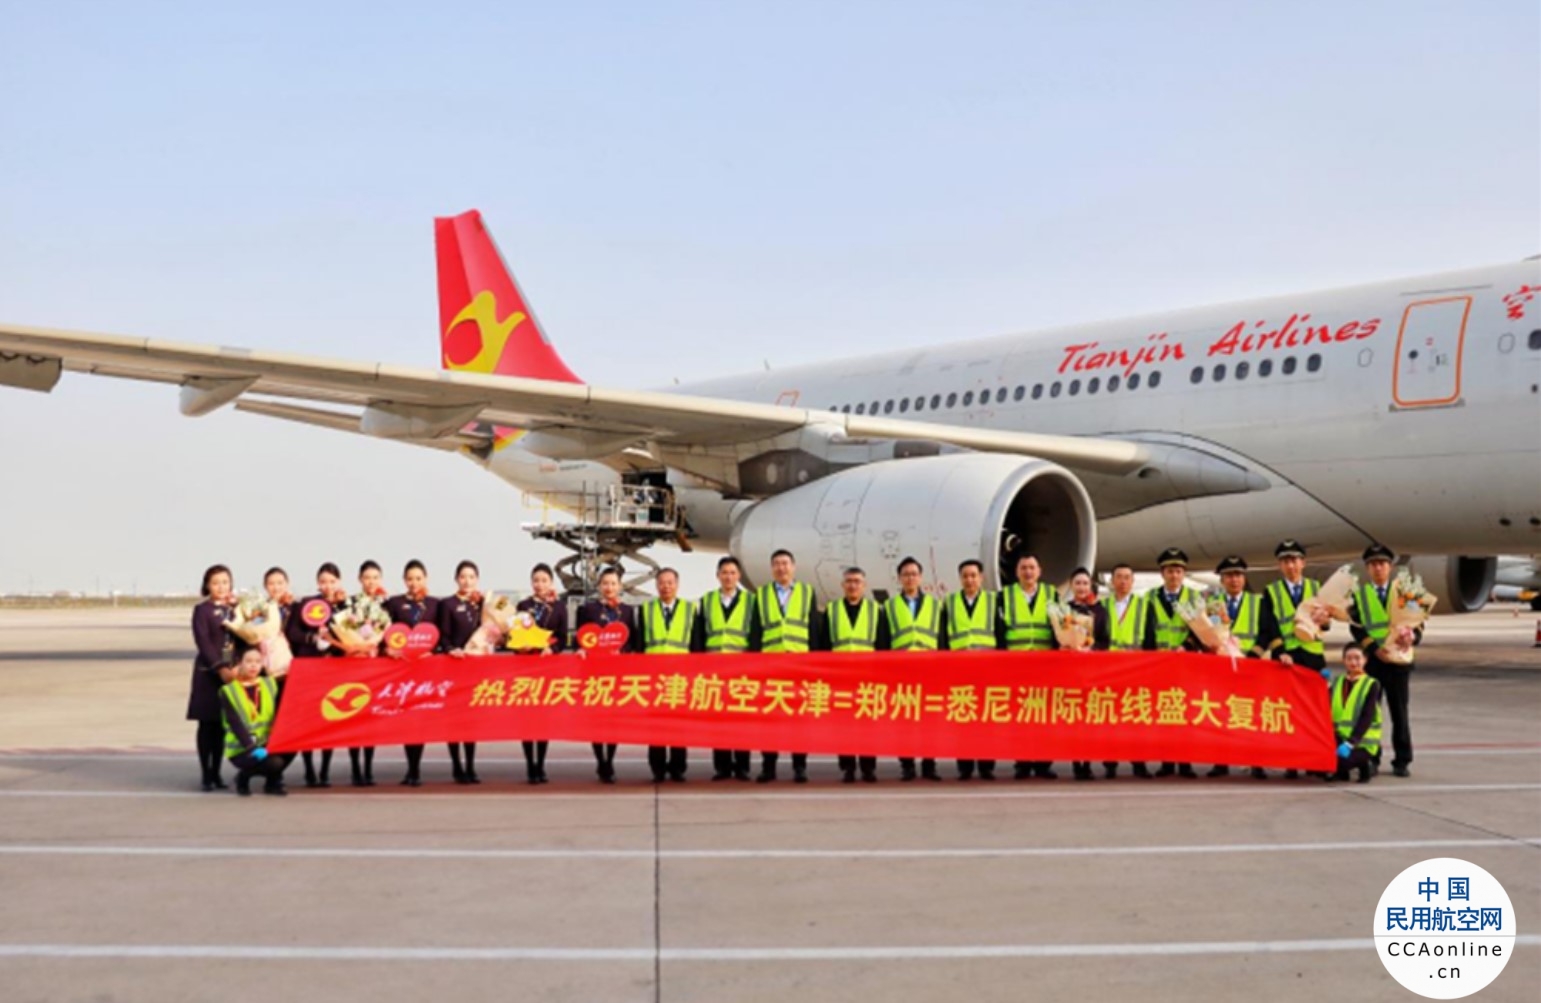 天津航空首条洲际定期航线 天津=郑州=悉尼国际航线3月24日顺利启航